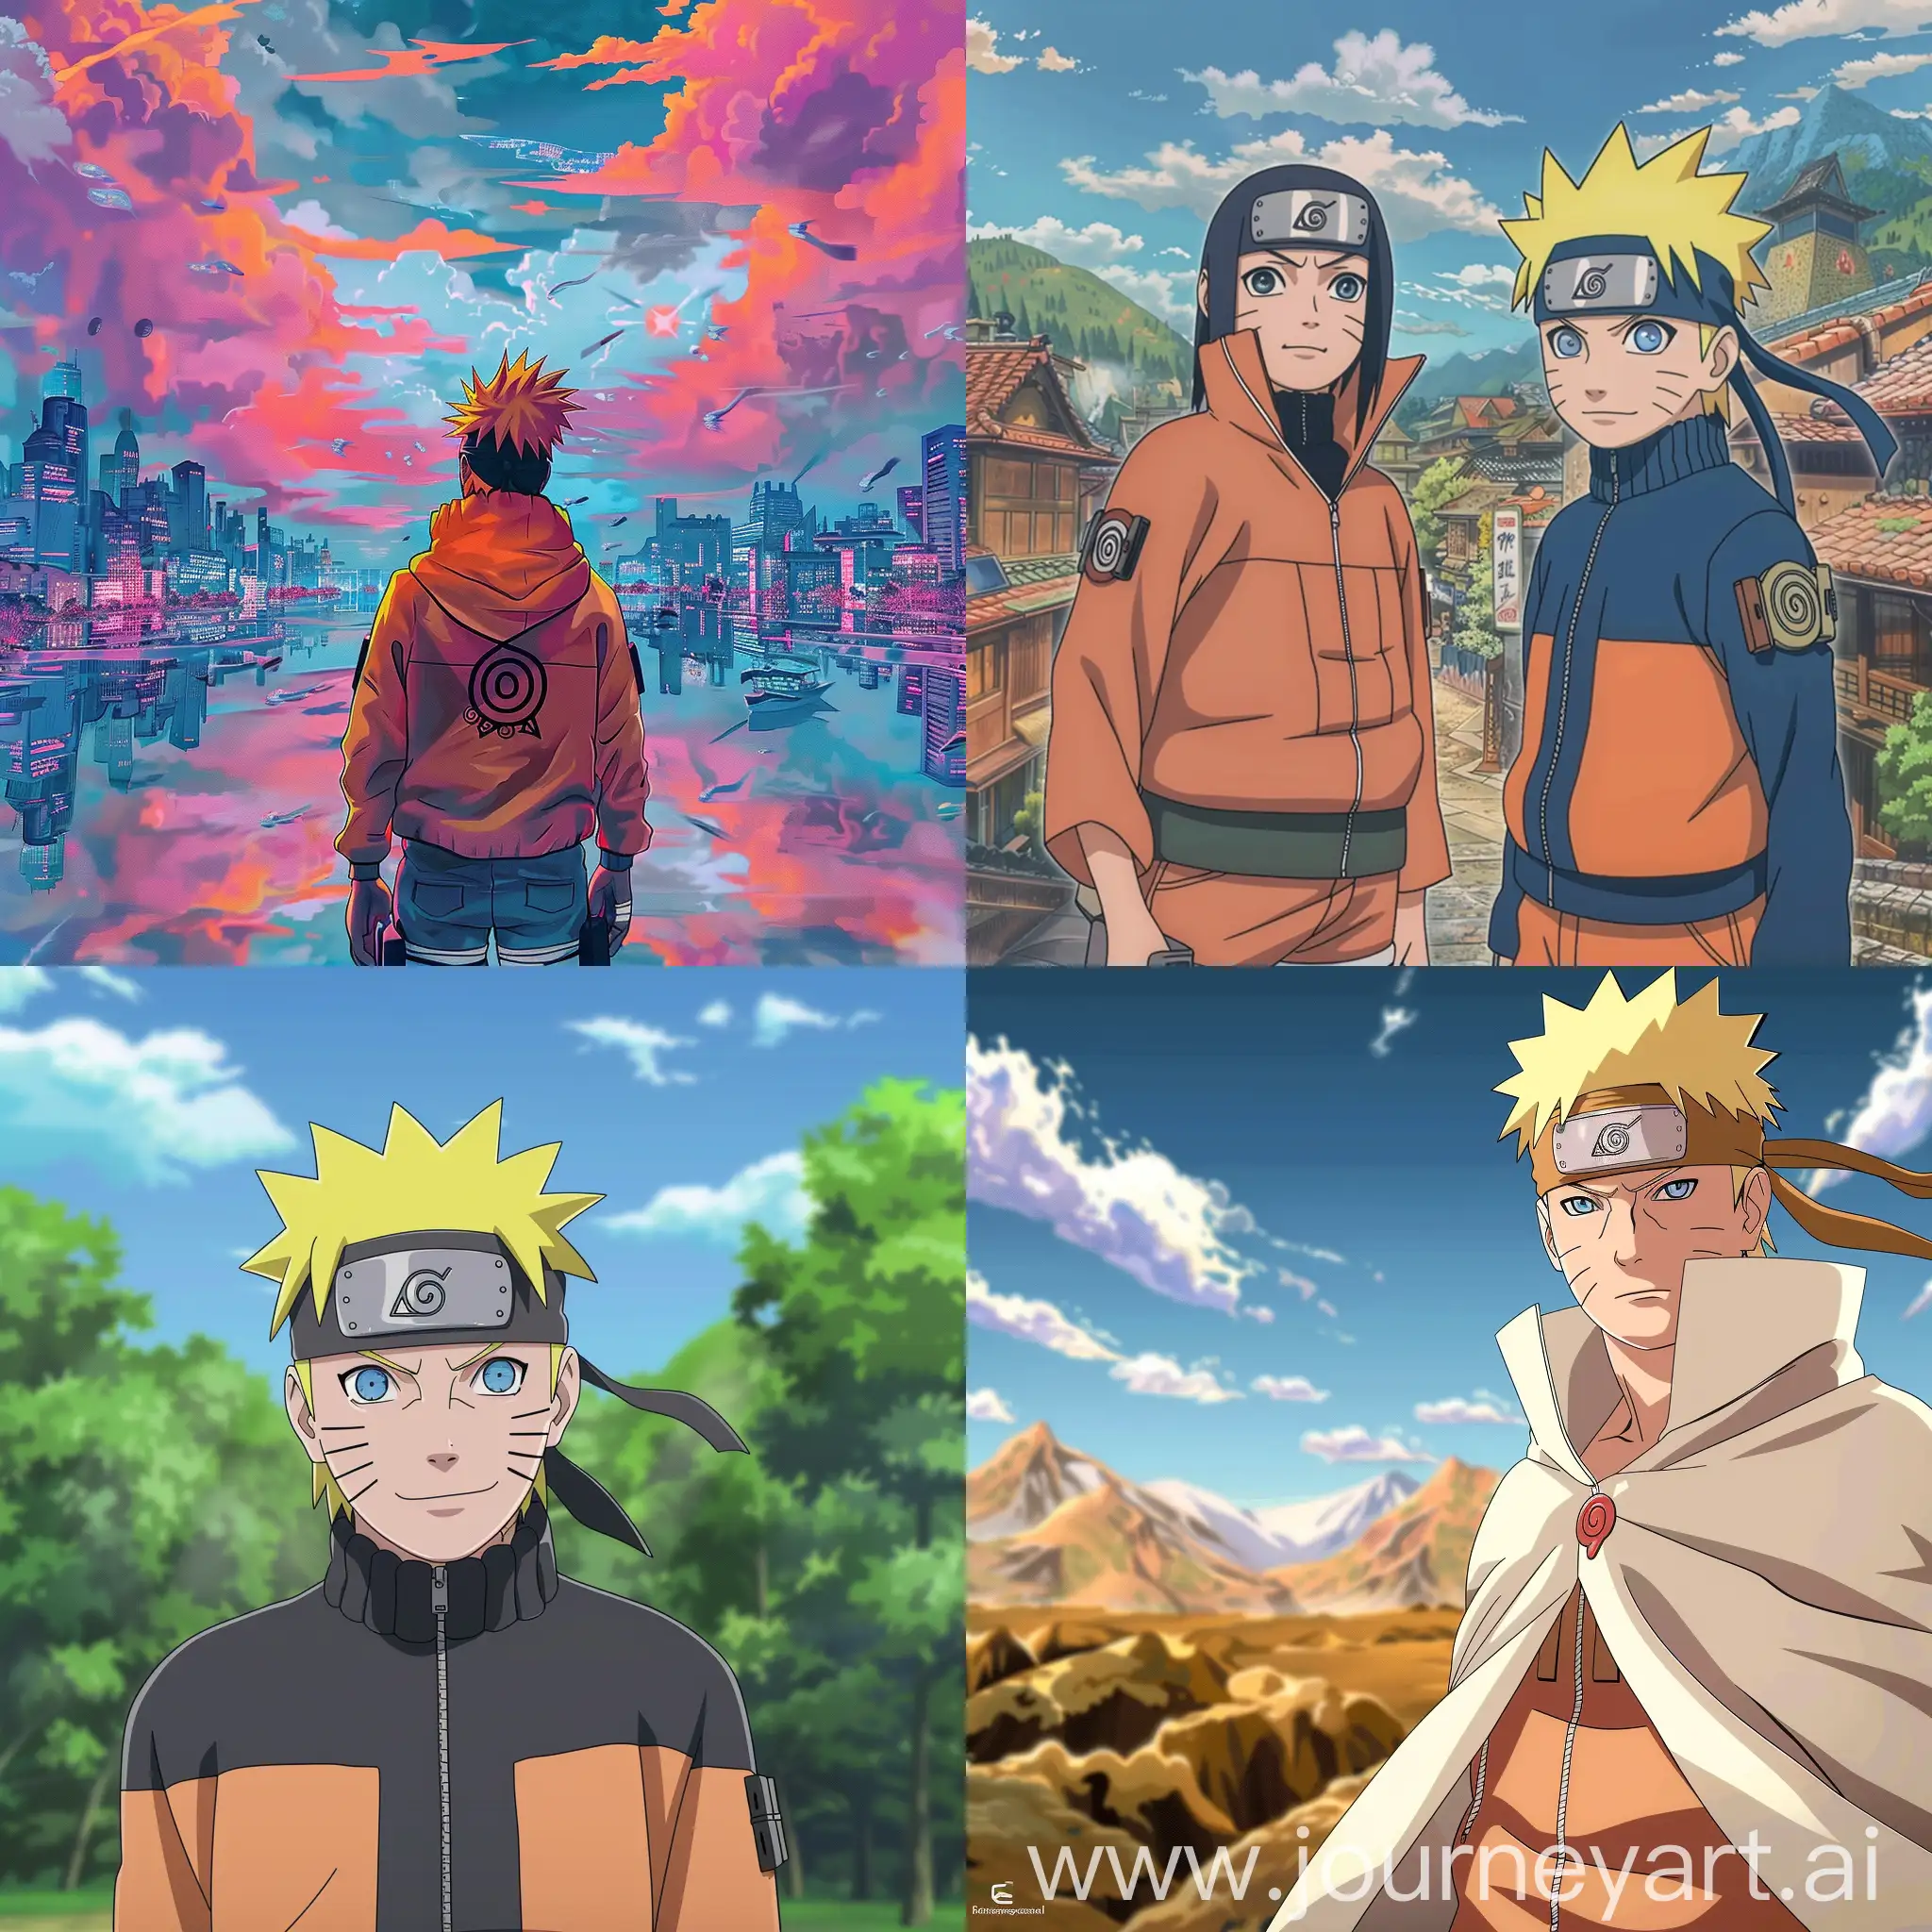 Naruto-Fan-Art-Dynamic-Ninja-Battle-Scene